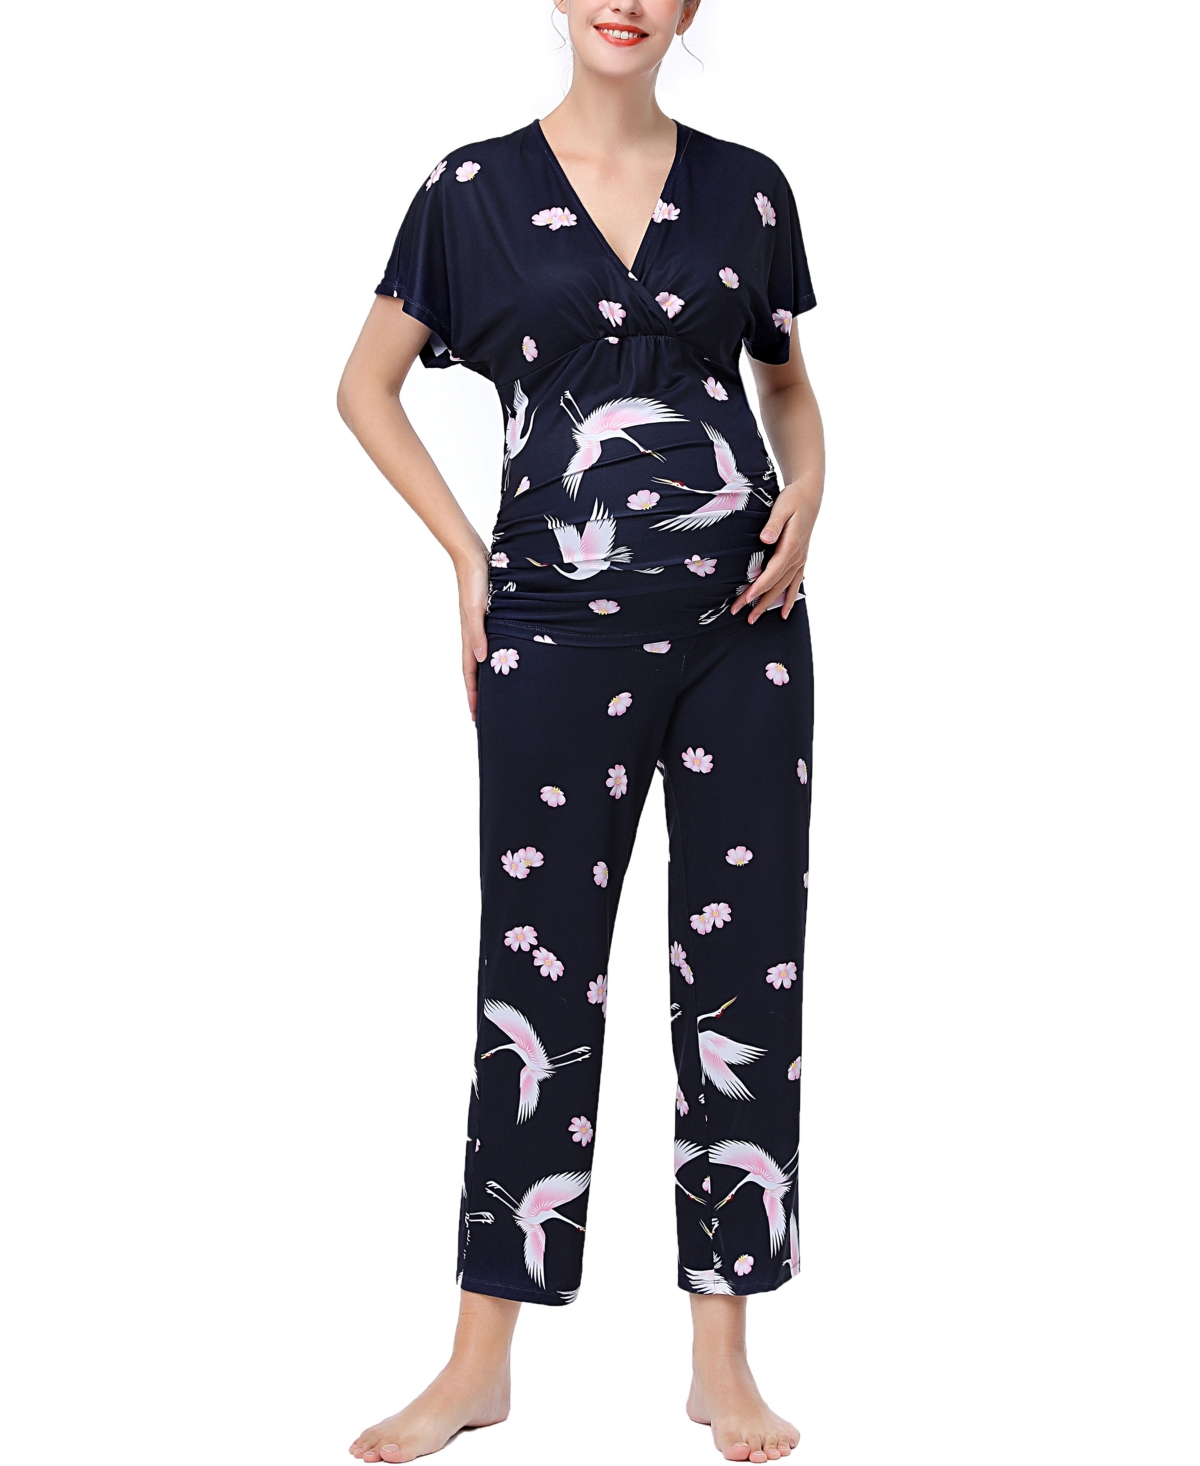 kimi + kai Maternity Birdie Nursing 2-Piece Pajama Set - Multicolored